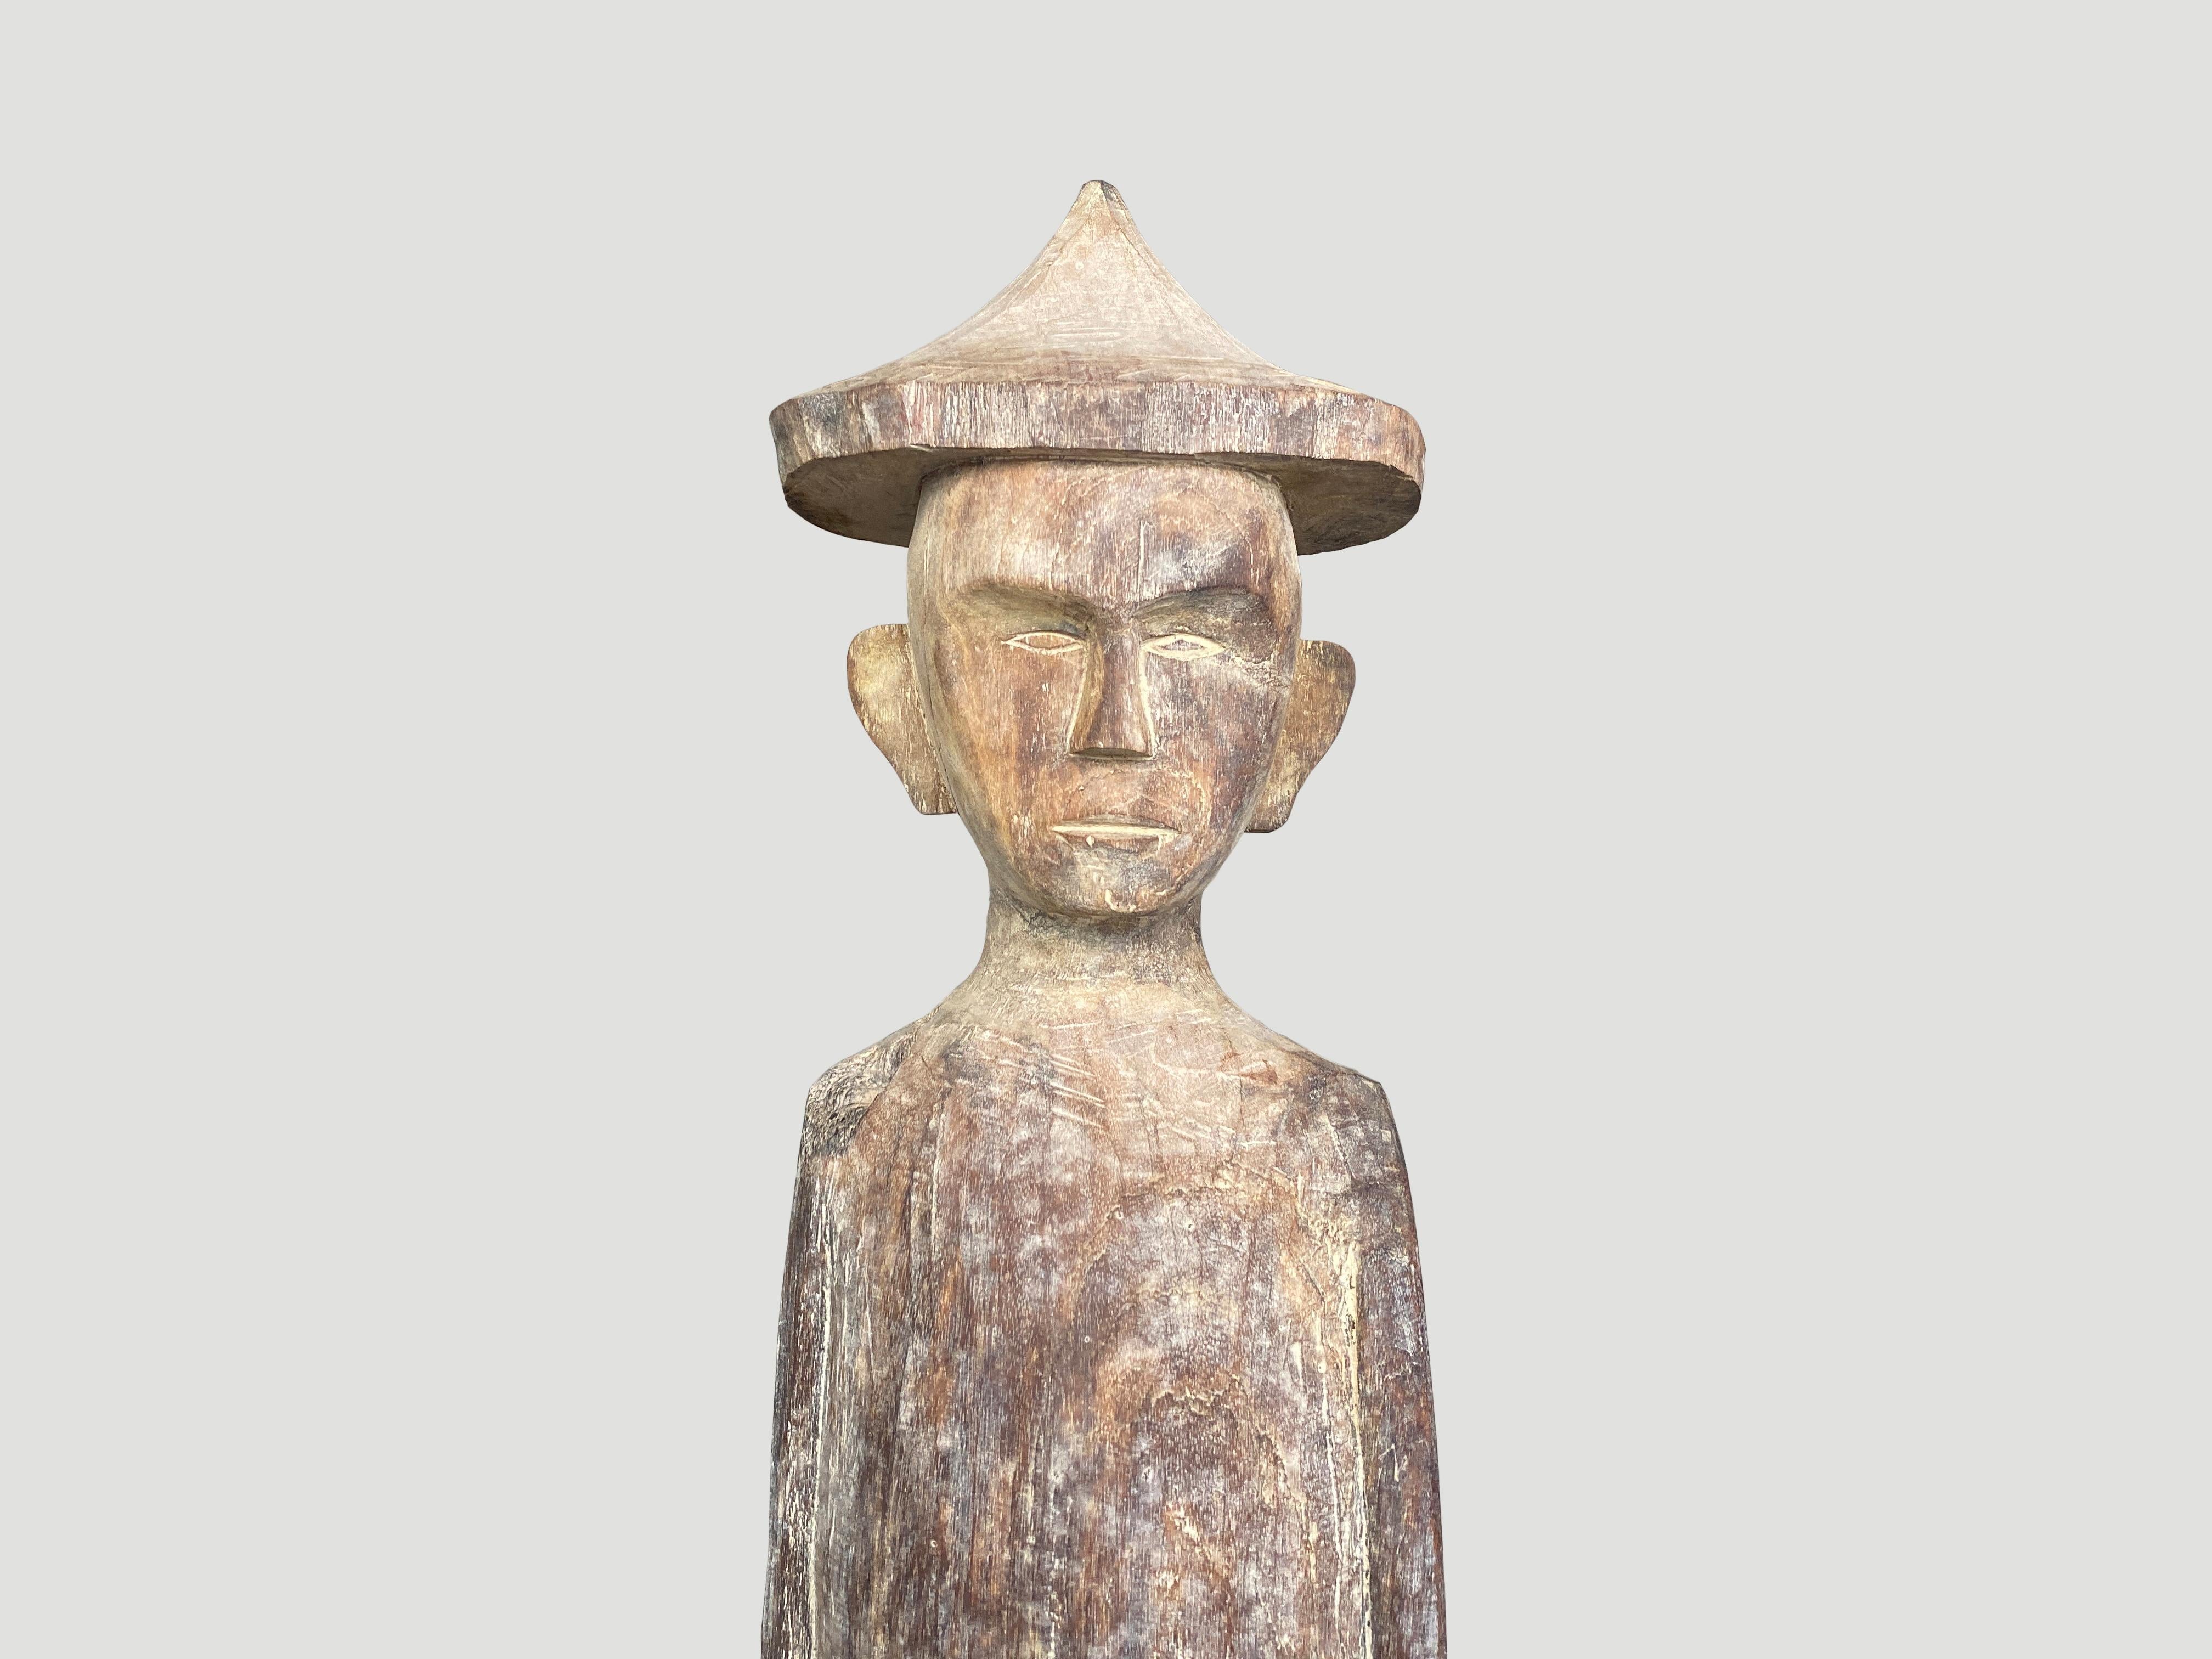 Beeindruckende antike männliche Statue, handgeschnitzt aus einem einzigen Holzstamm mit schönen Schnitzereien aus West-Borneo. Ursprünglich wurden sie zum Schutz des Hauses vor bösen Geistern verwendet und als Wächter vor dem Haus in den Boden